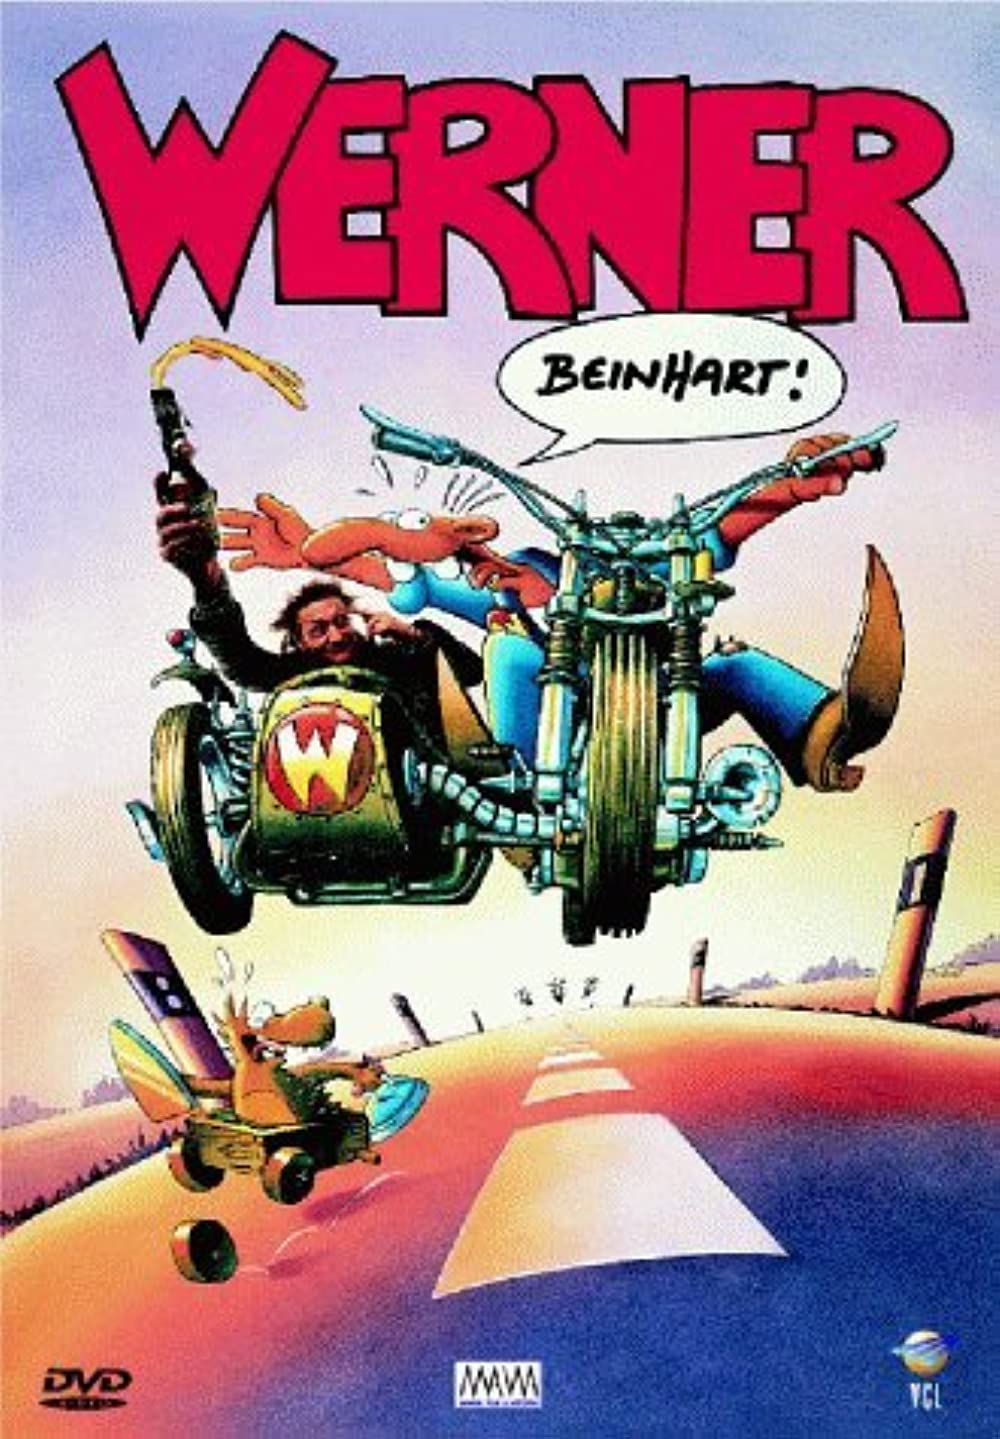 Filmbeschreibung zu Werner - Beinhart (1990)